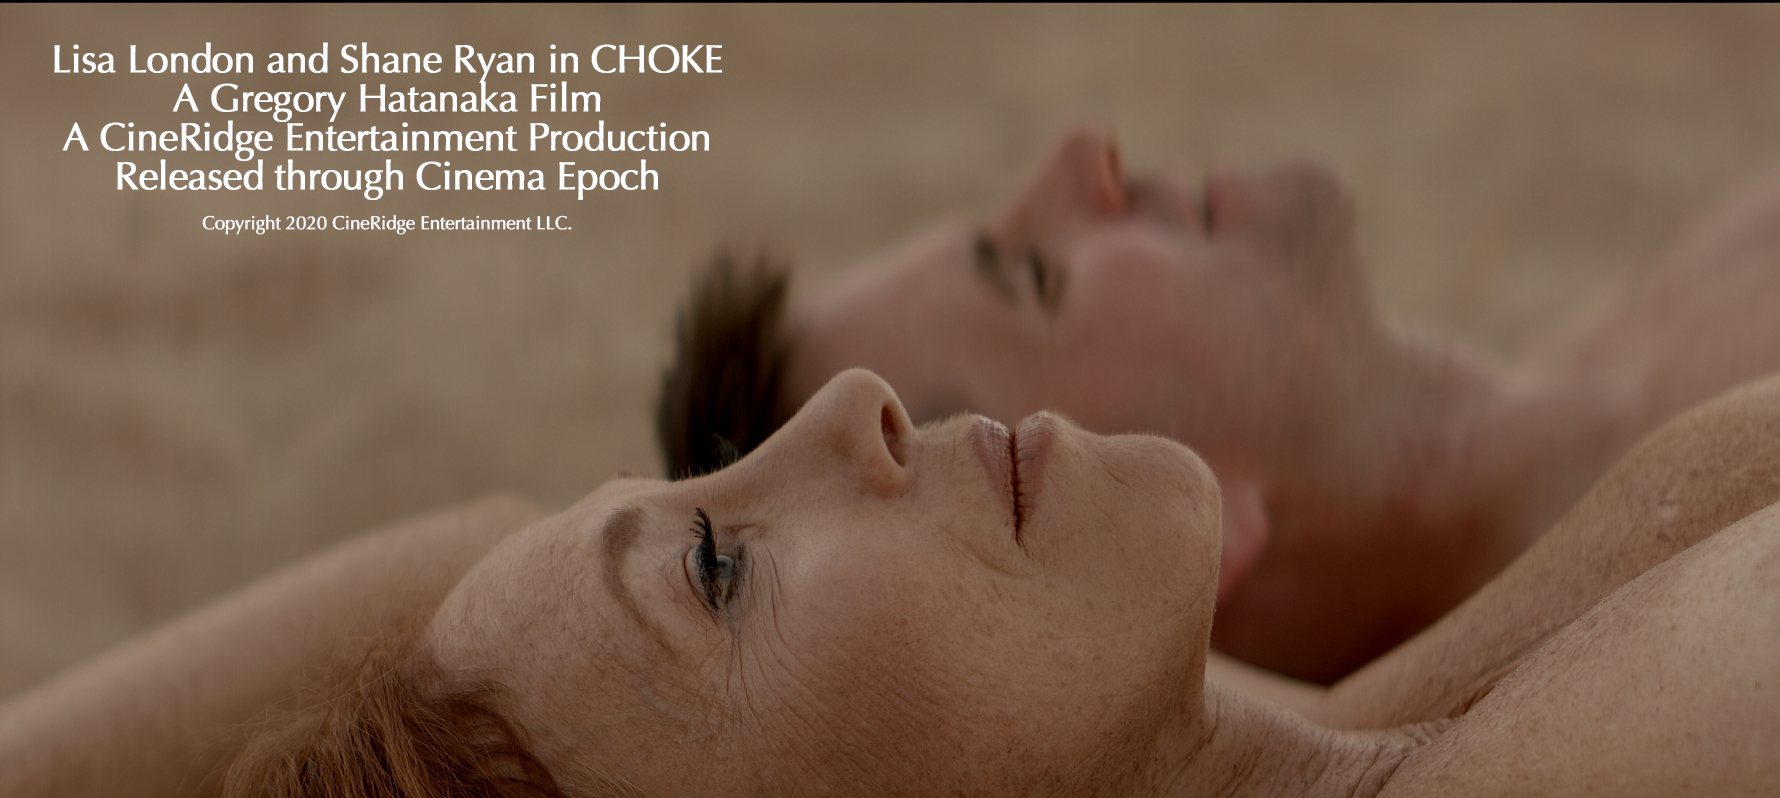 Choke (2020) Screenshot 5 